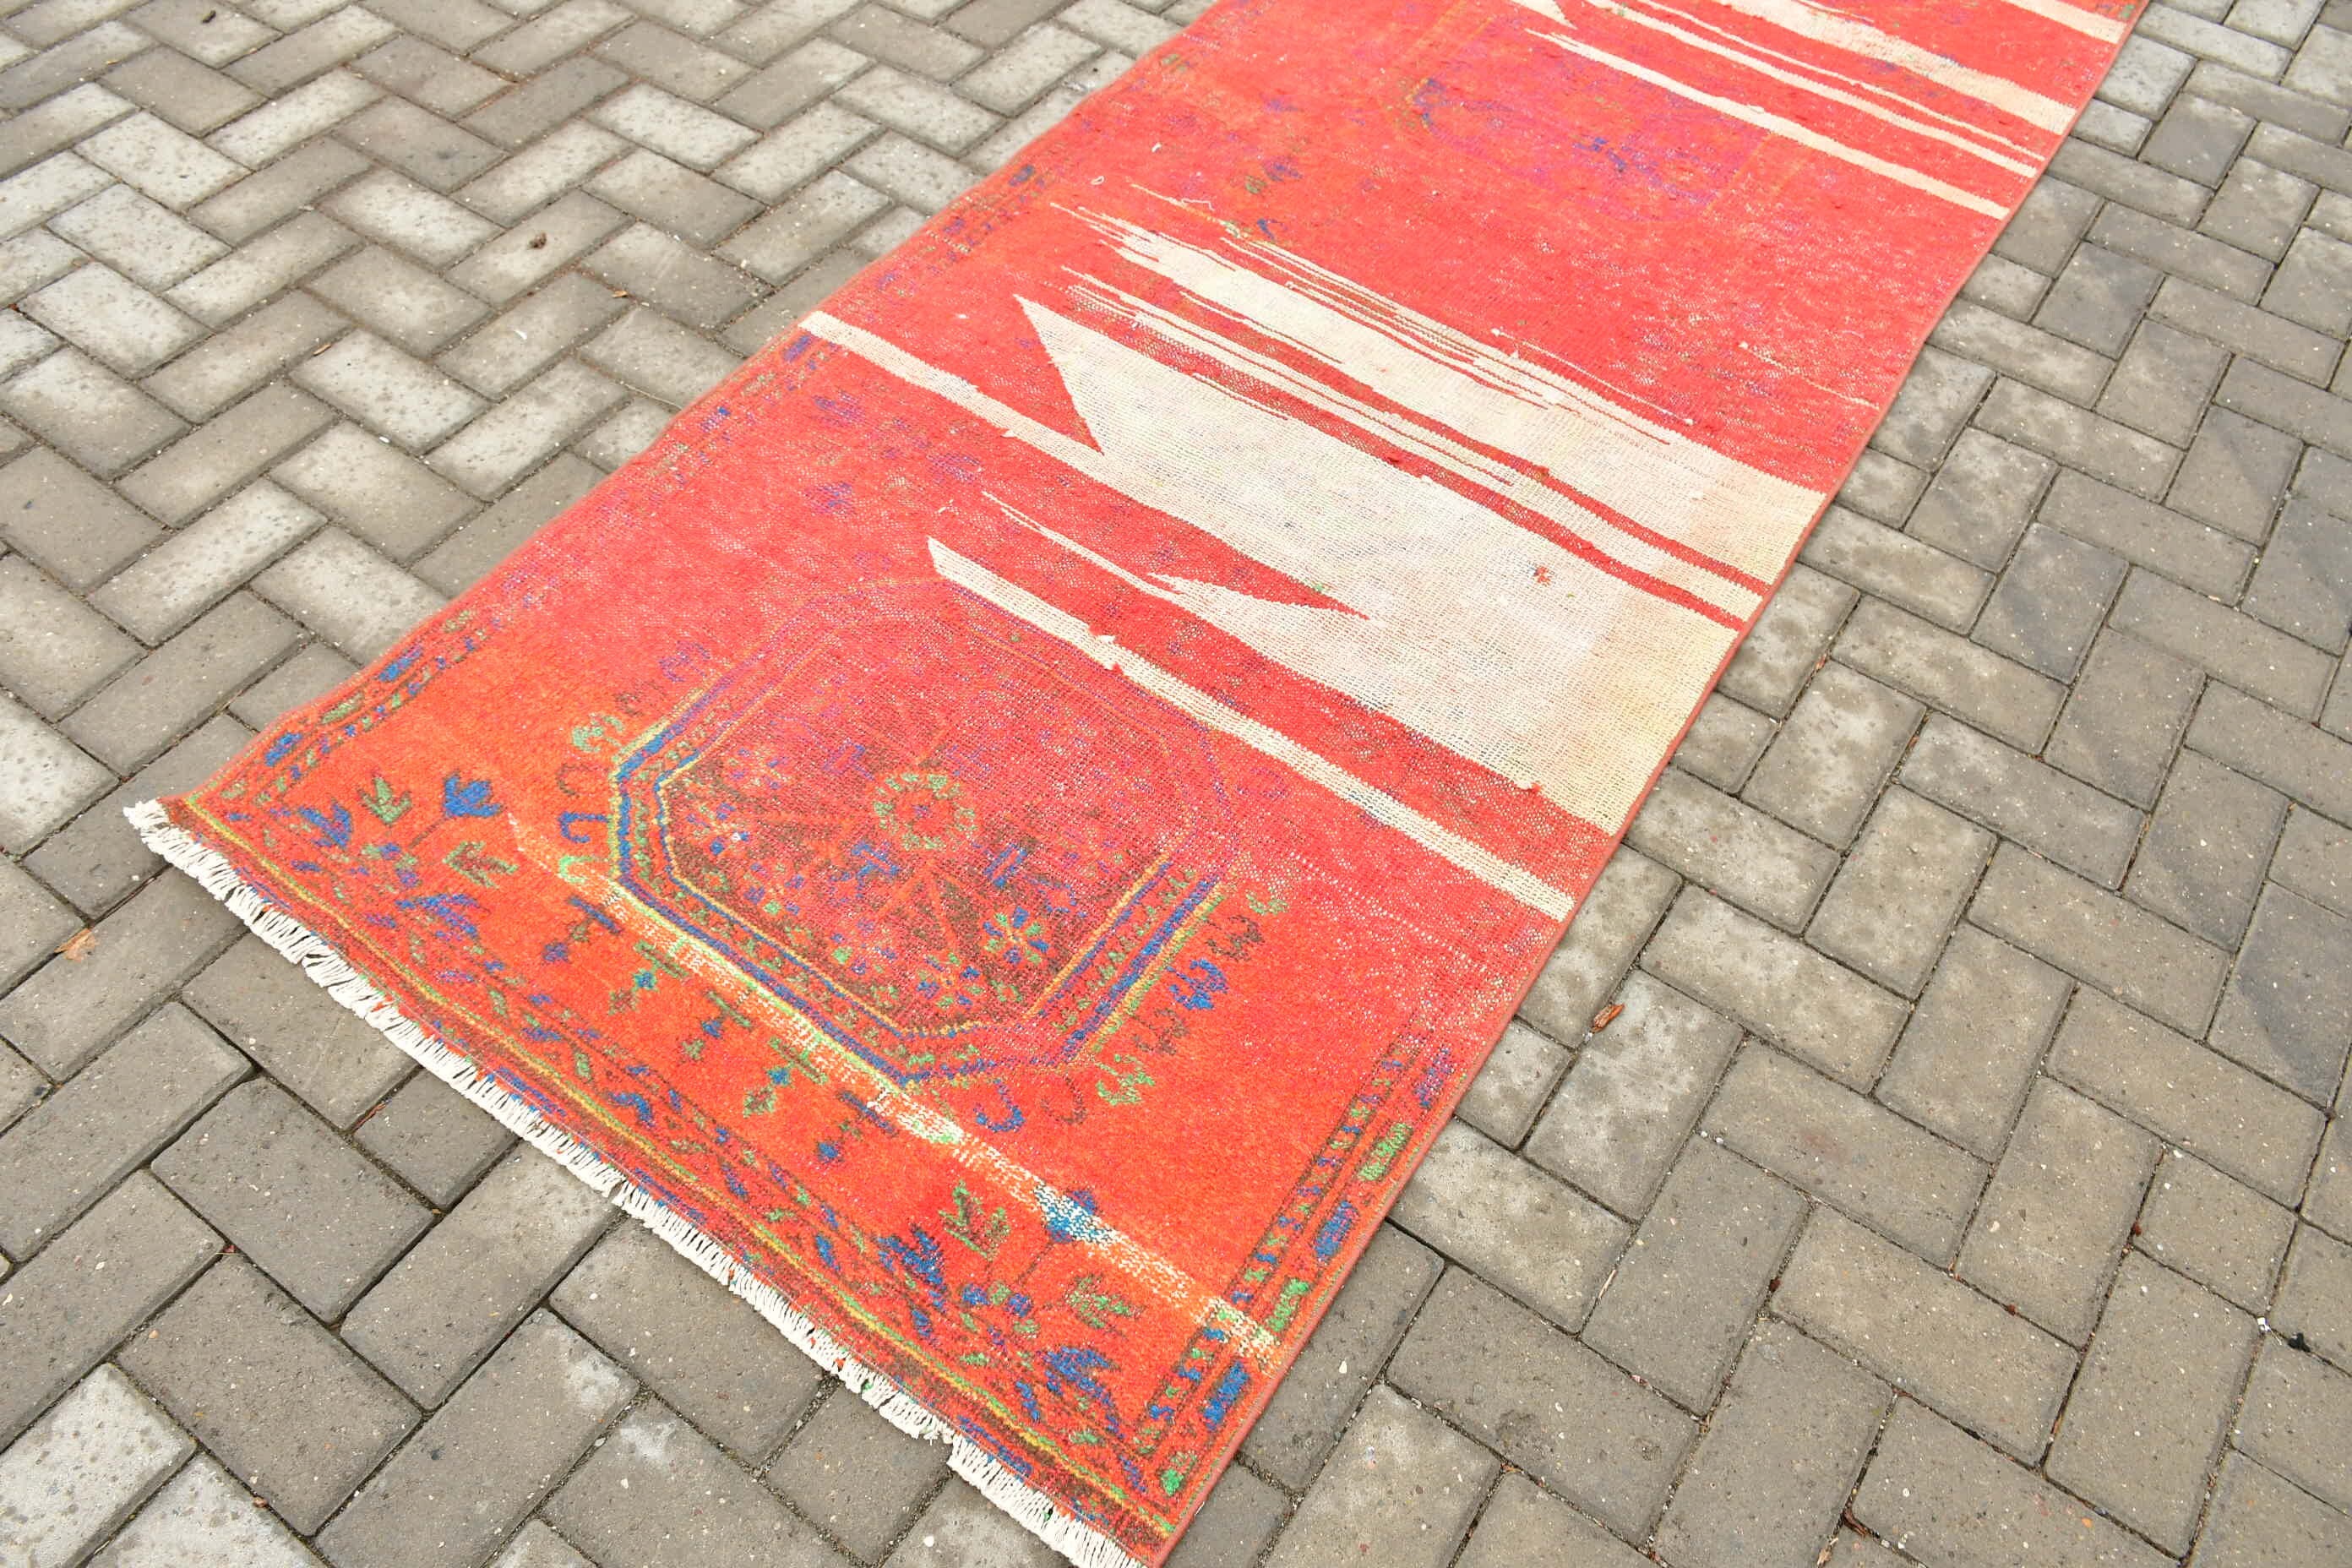 Red Moroccan Rugs, Rugs for Corridor, Art Rug, Vintage Rug, Wool Rug, Hallway Rug, Turkish Rug, 3.3x10.6 ft Runner Rug, Floor Rugs, Old Rug